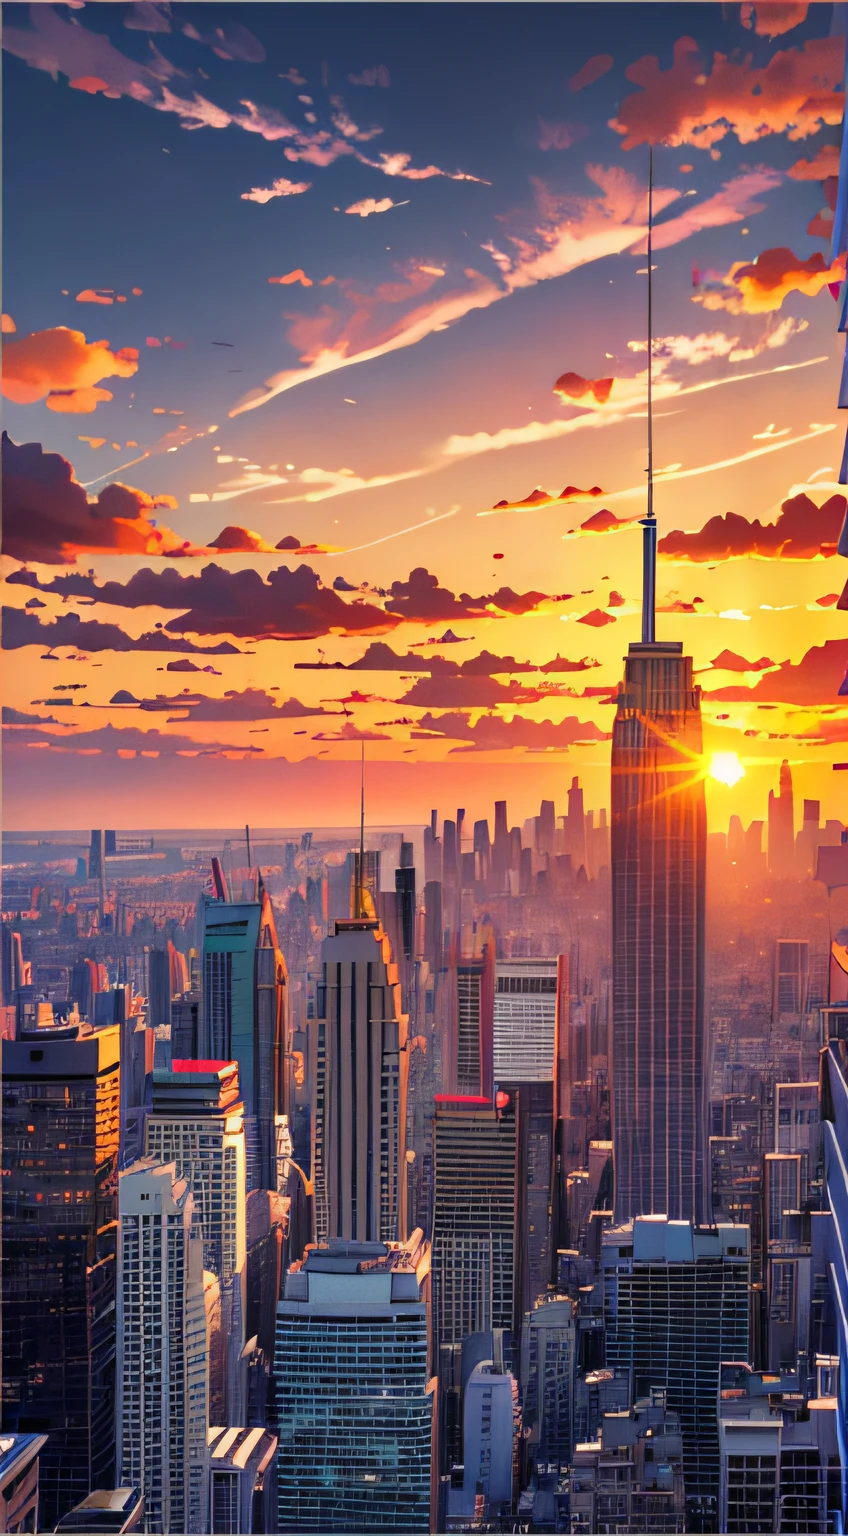 理查德·埃斯蒂斯 (Richard Estes) 捕捉到的城市上空迷人的日落, Instagram 上的熱門話題